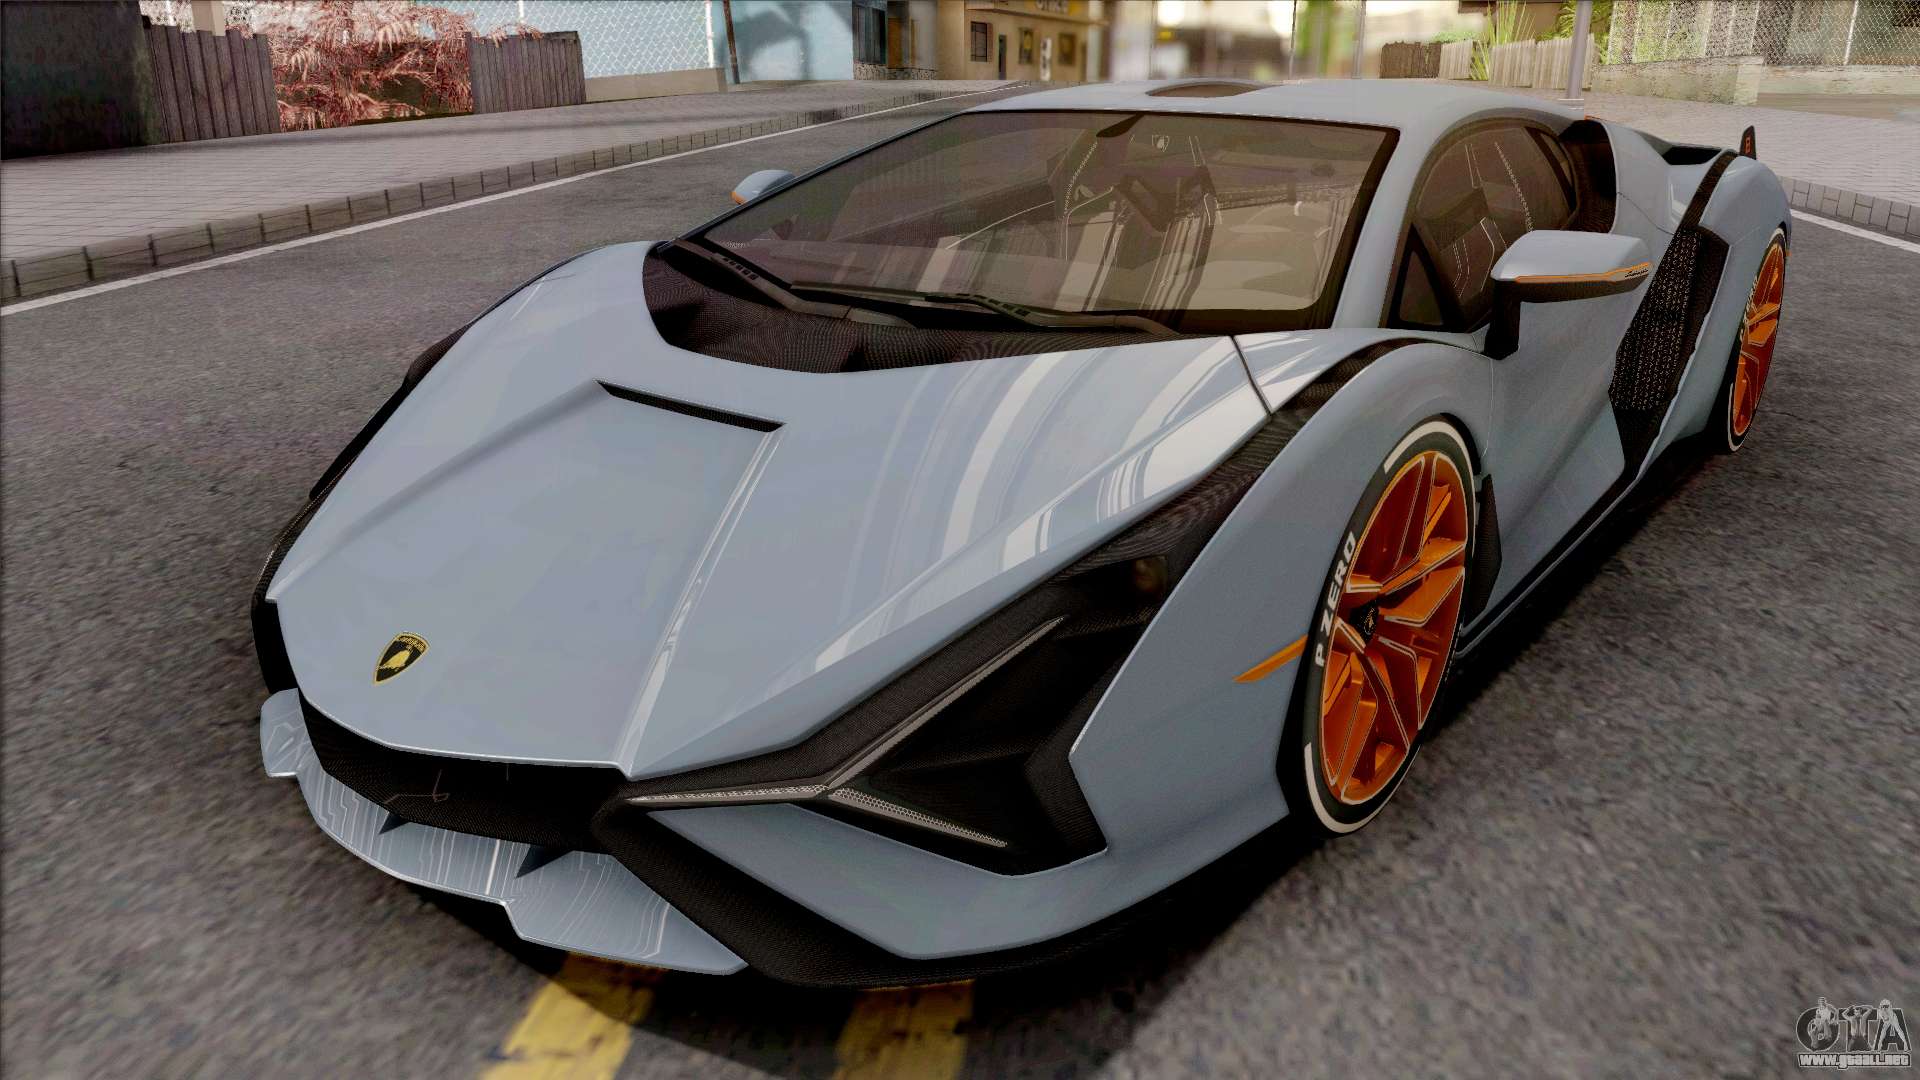 Lamborghini Sián FKP 37: Caracteristicas, Precio, Imagenes y video